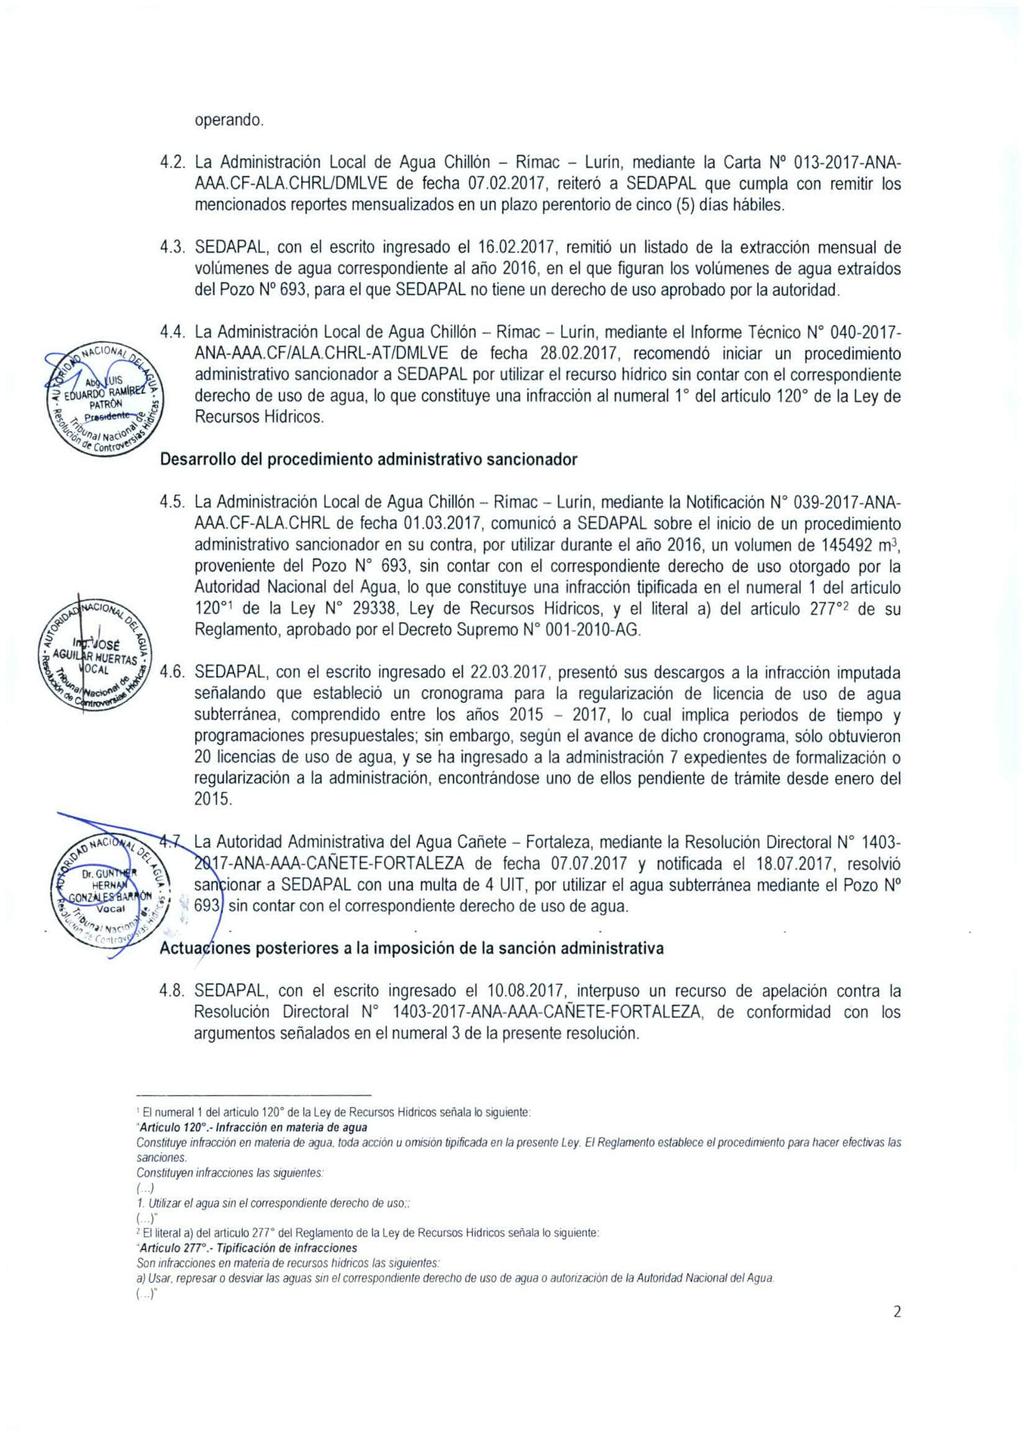 operando. 4.2. La Administración Local de Agua Chillón - Rímac - Lurin, mediante la Carta N 013-2017-ANA- AAA.CF-ALA.CHRL/DMLVE de fecha 07.02.